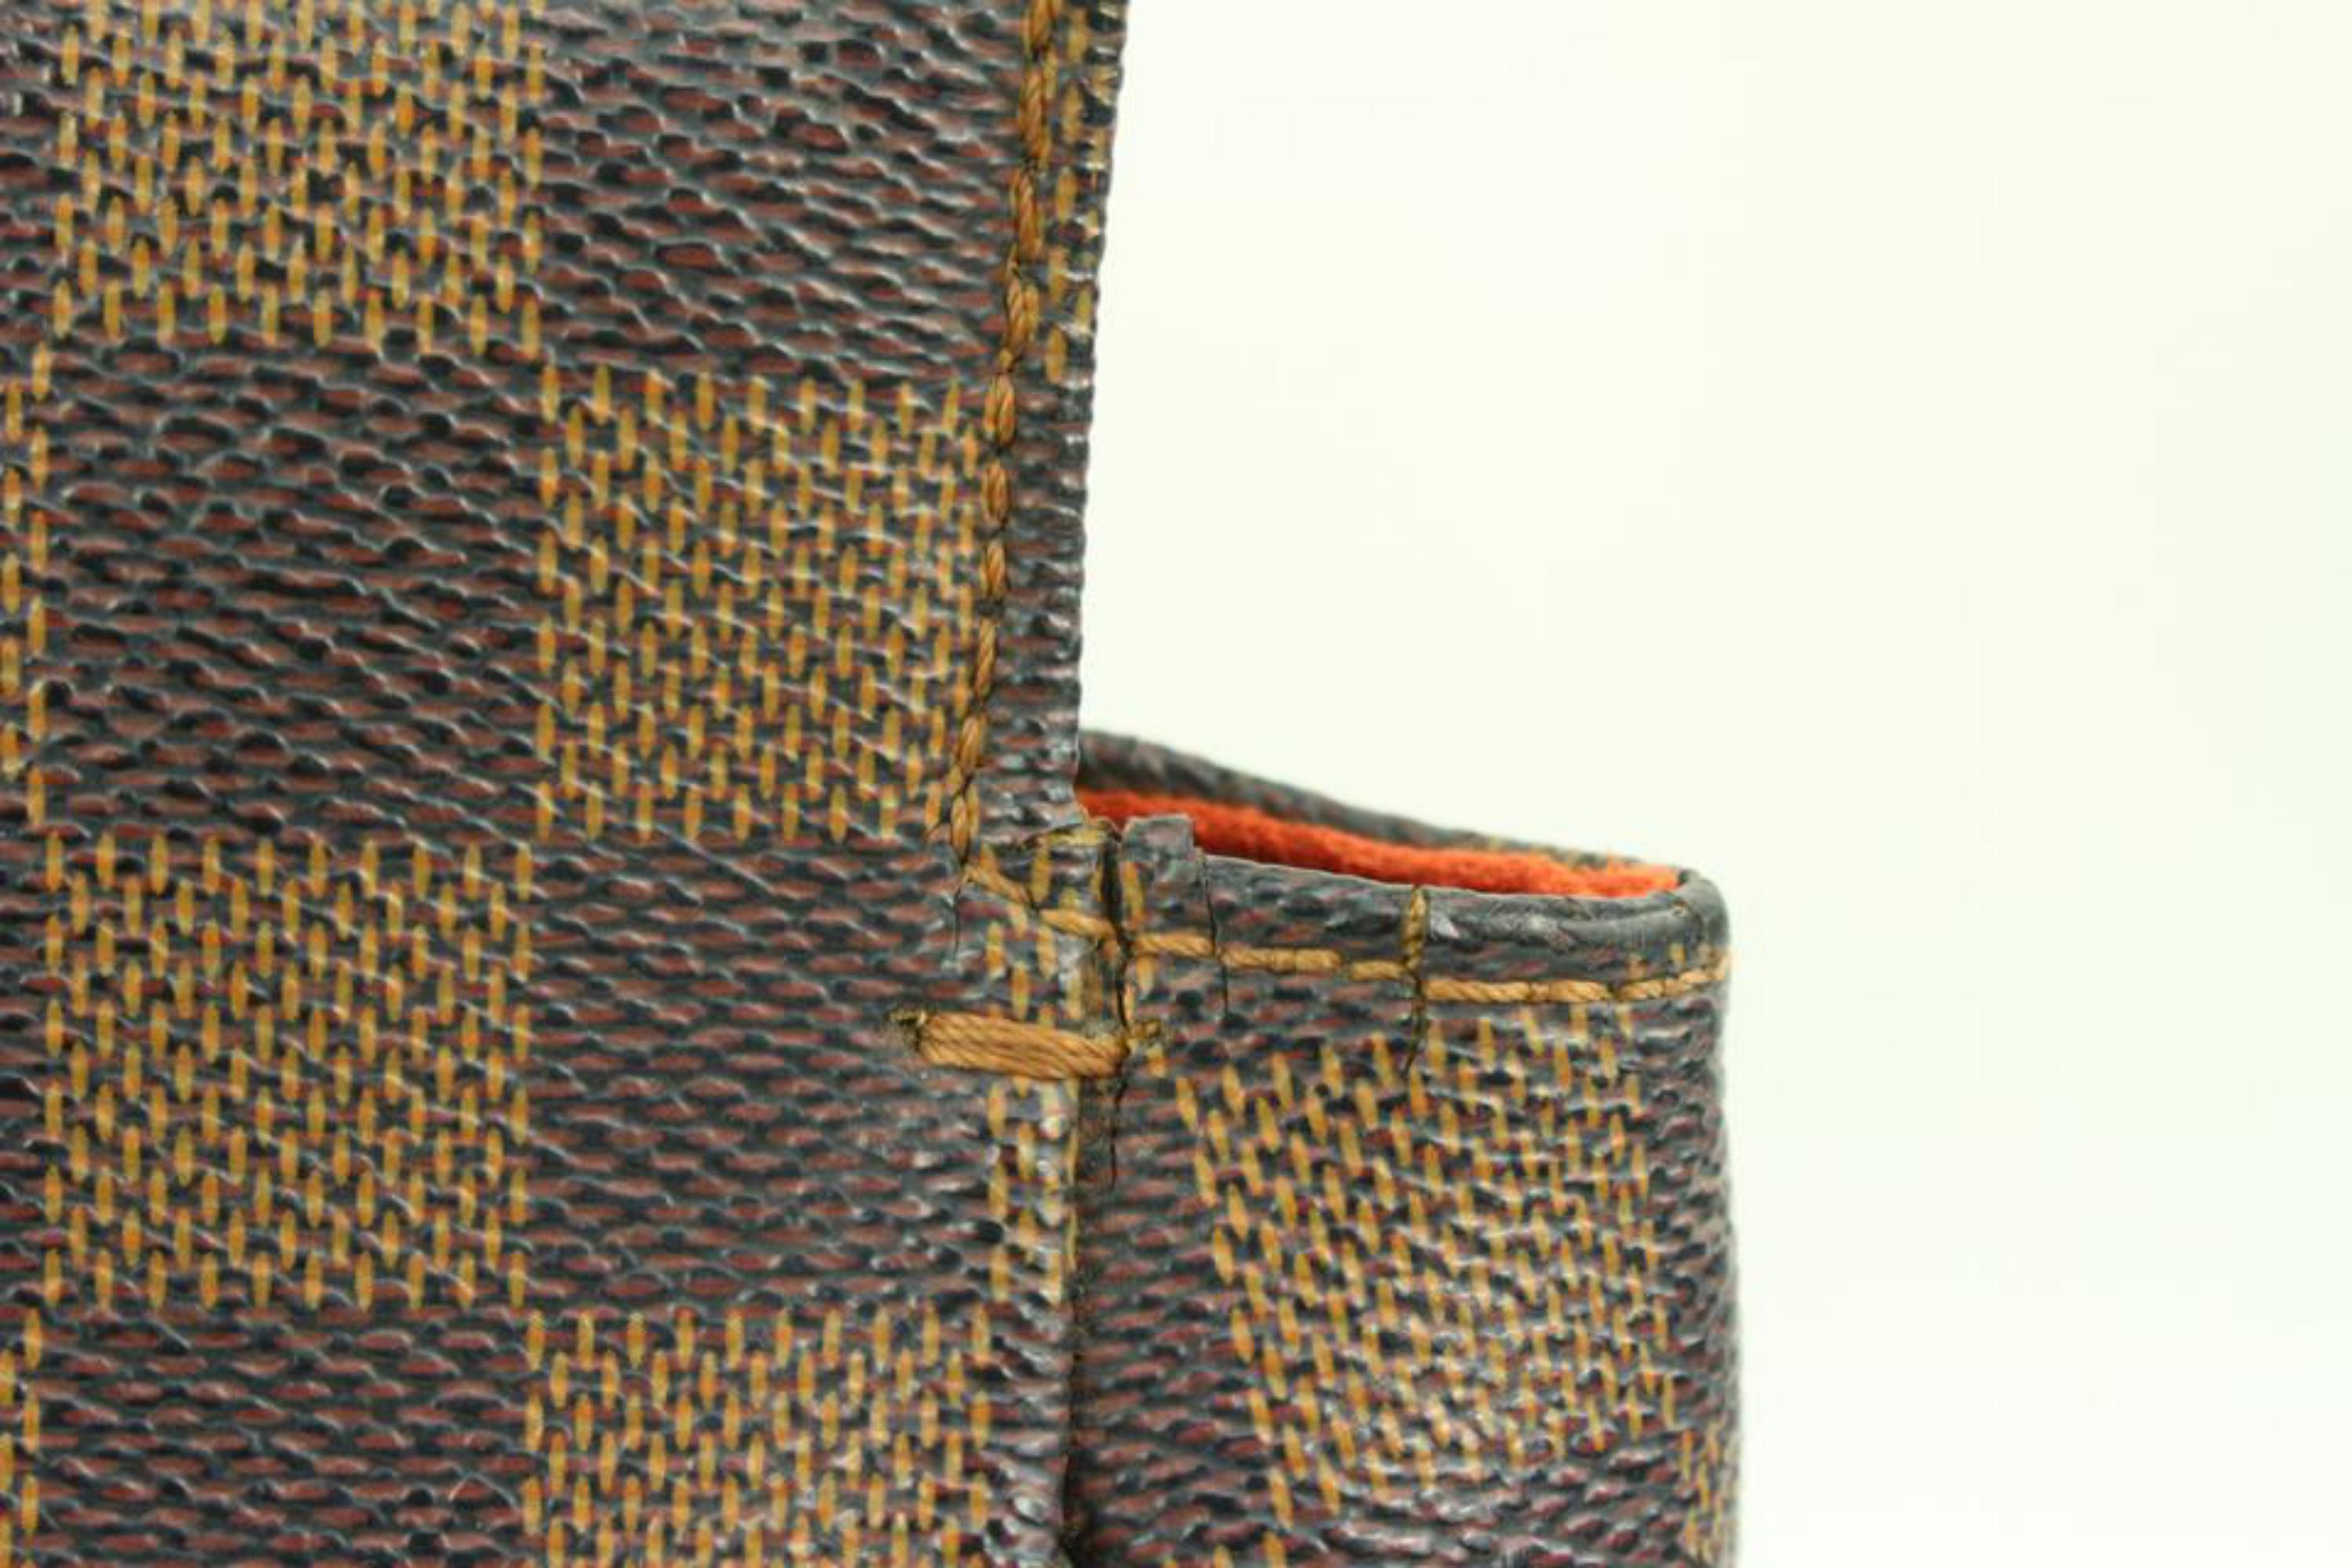 Louis Vuitton Damier Ebene Parioli PM Shopper Tote Bag S215lv94 For Sale 6